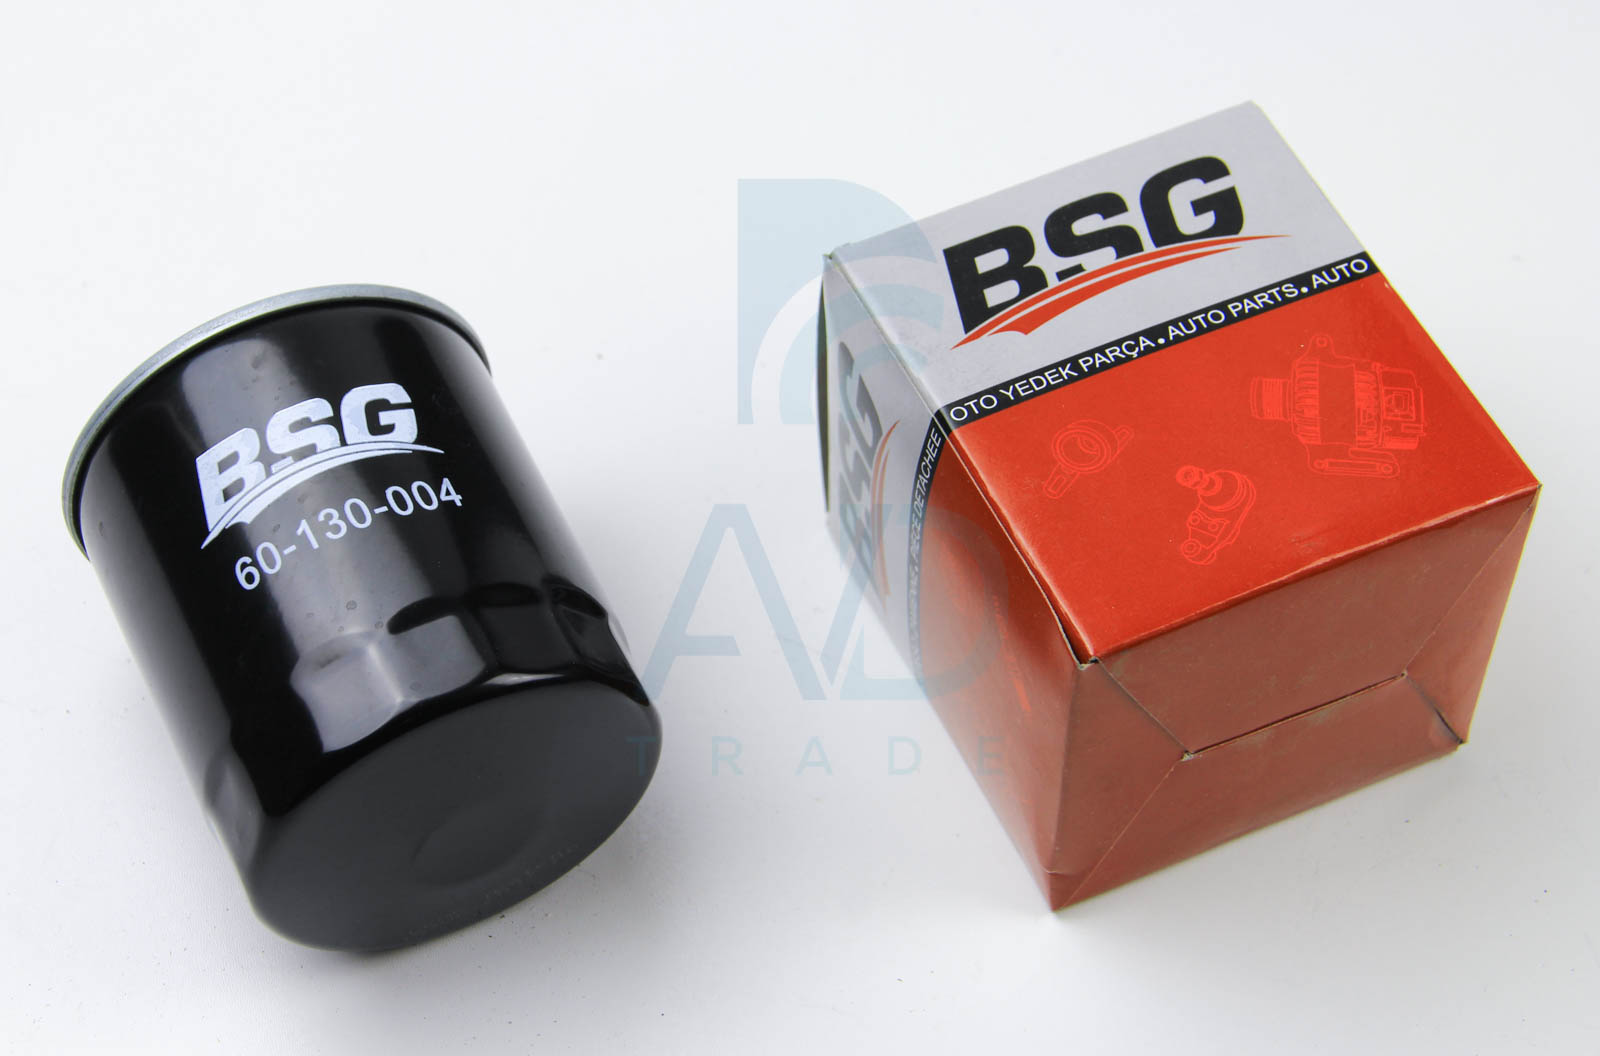 Топливный фильтр MEYLE арт. BSG 60-130-004